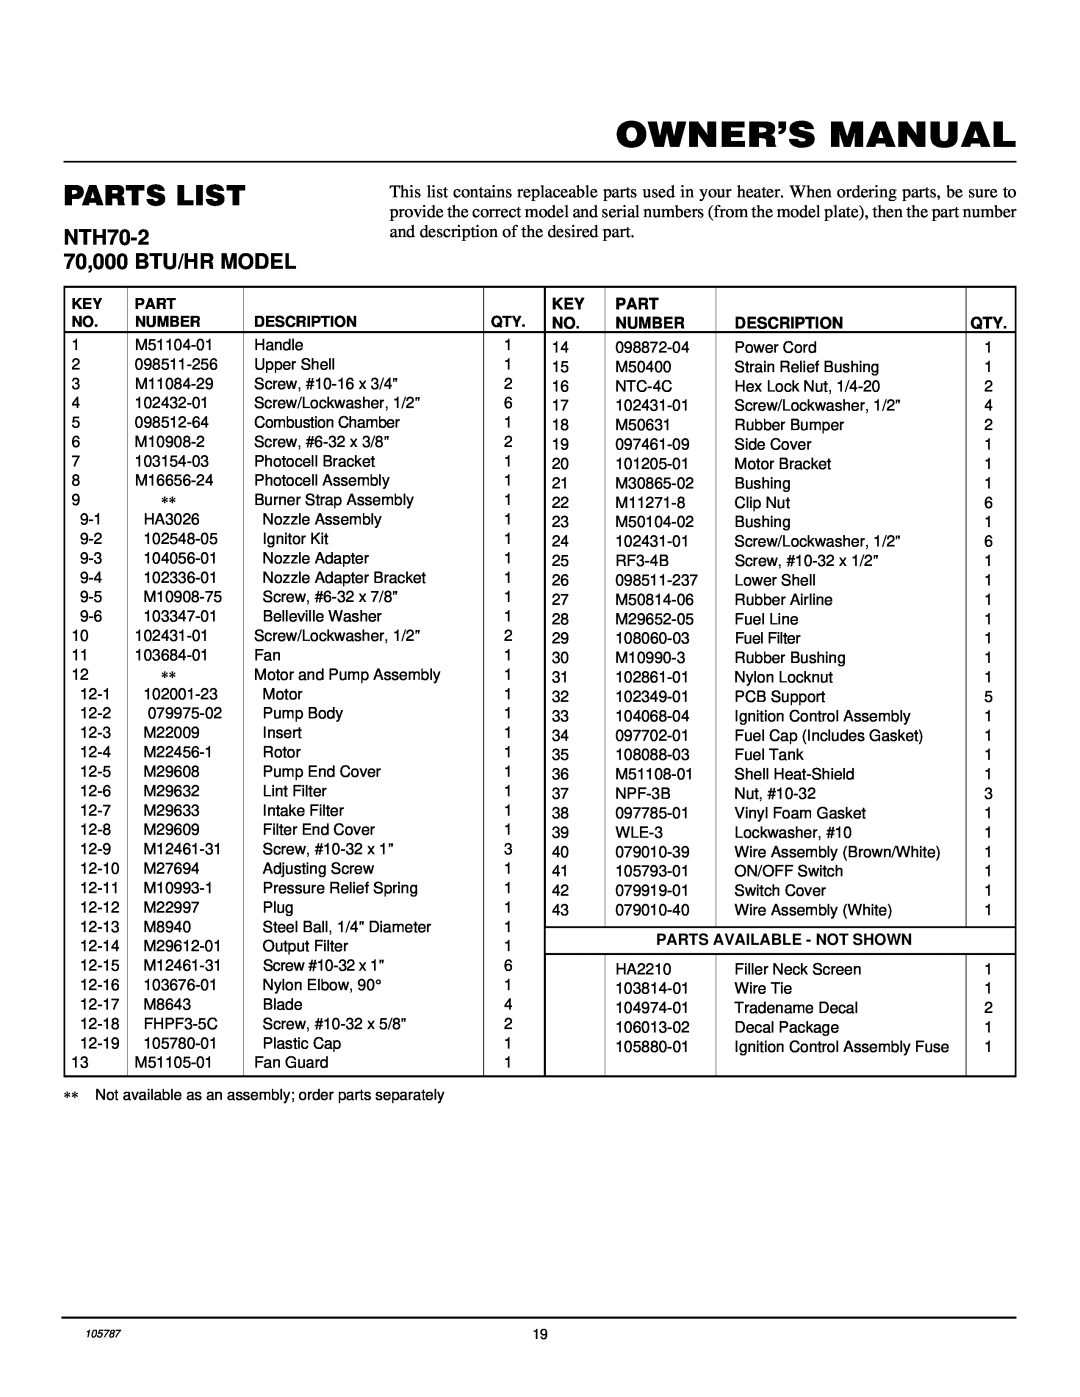 Desa NTH50-2, NTH35-2 Parts List, NTH70-2 70,000 BTU/HR MODEL, Number, Description, Parts Available - Not Shown 